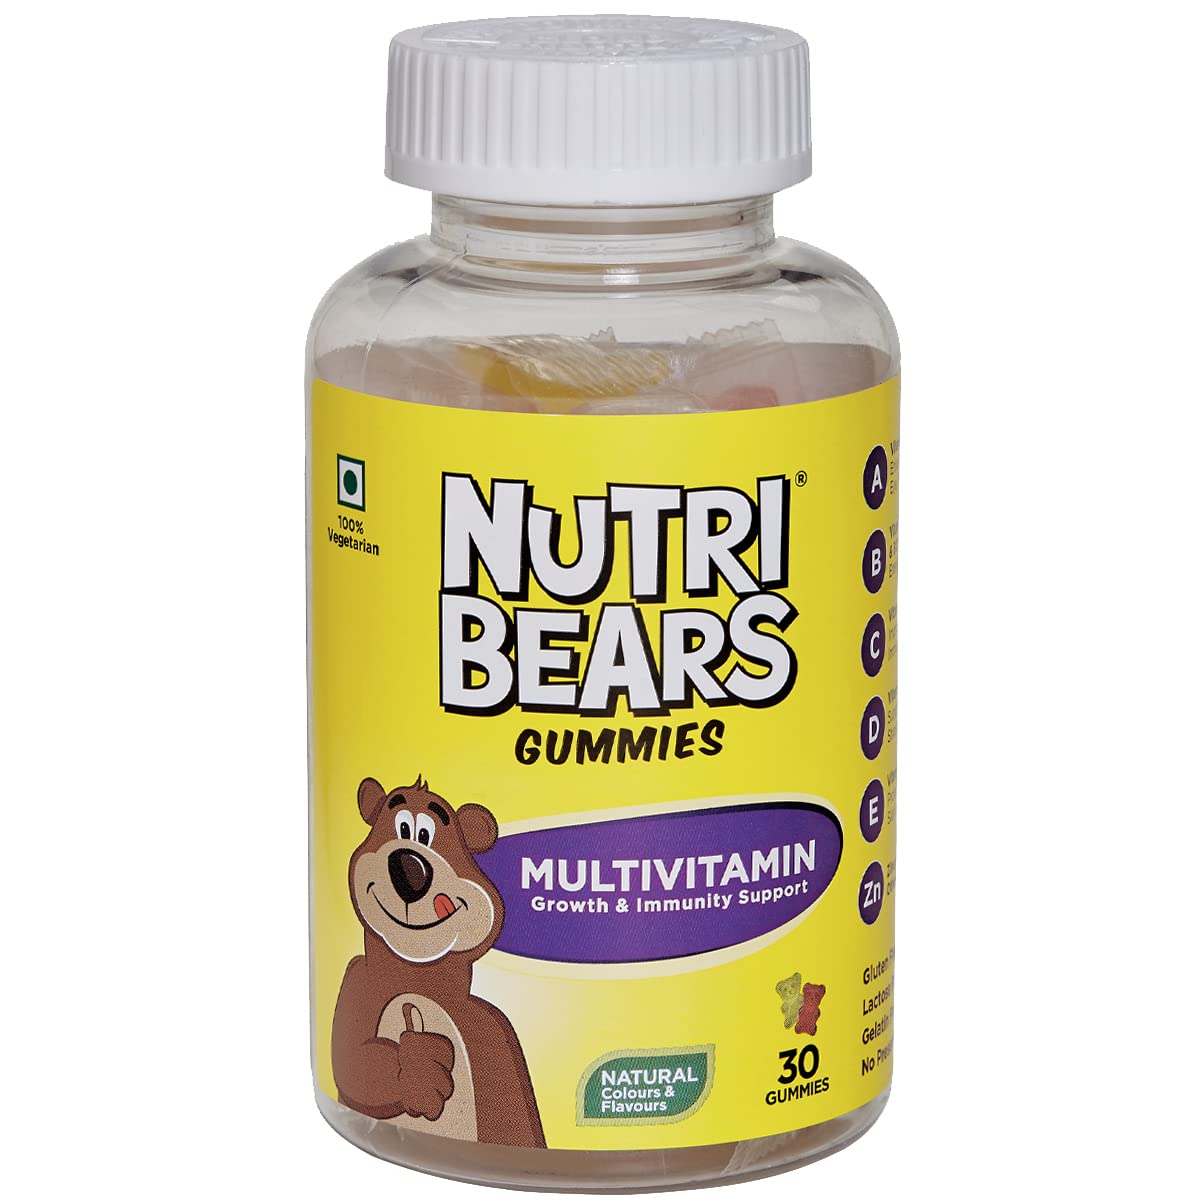 Buy Nutribears Multivitamins, 30 Gummies Online